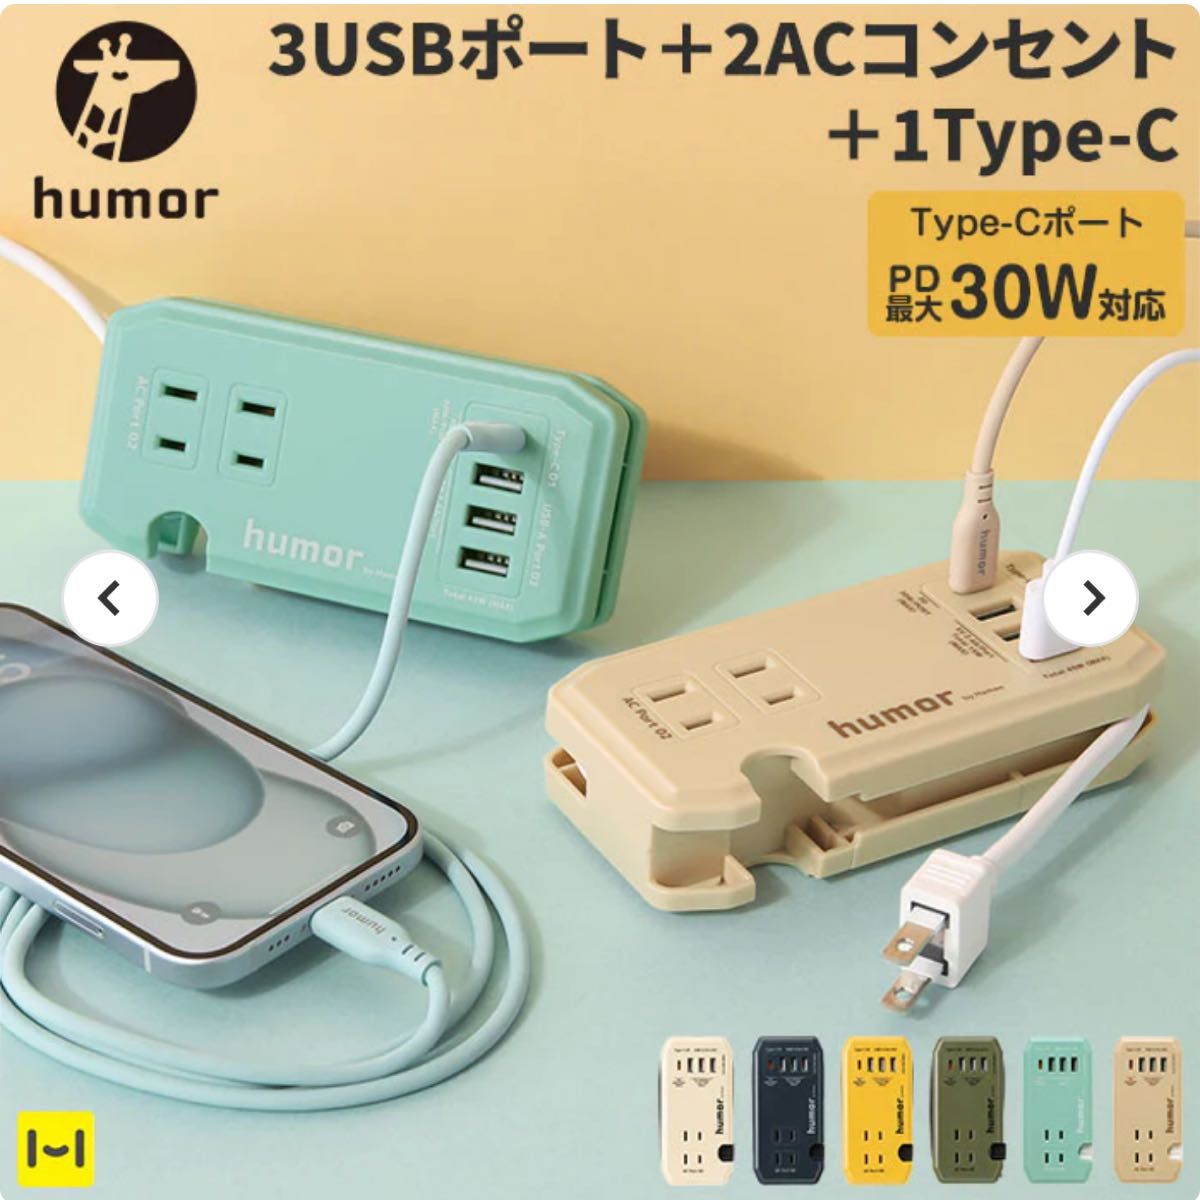 ハミー Hamee humor handy Plus AC PD30W対応 USB タップ オリーブグリーン